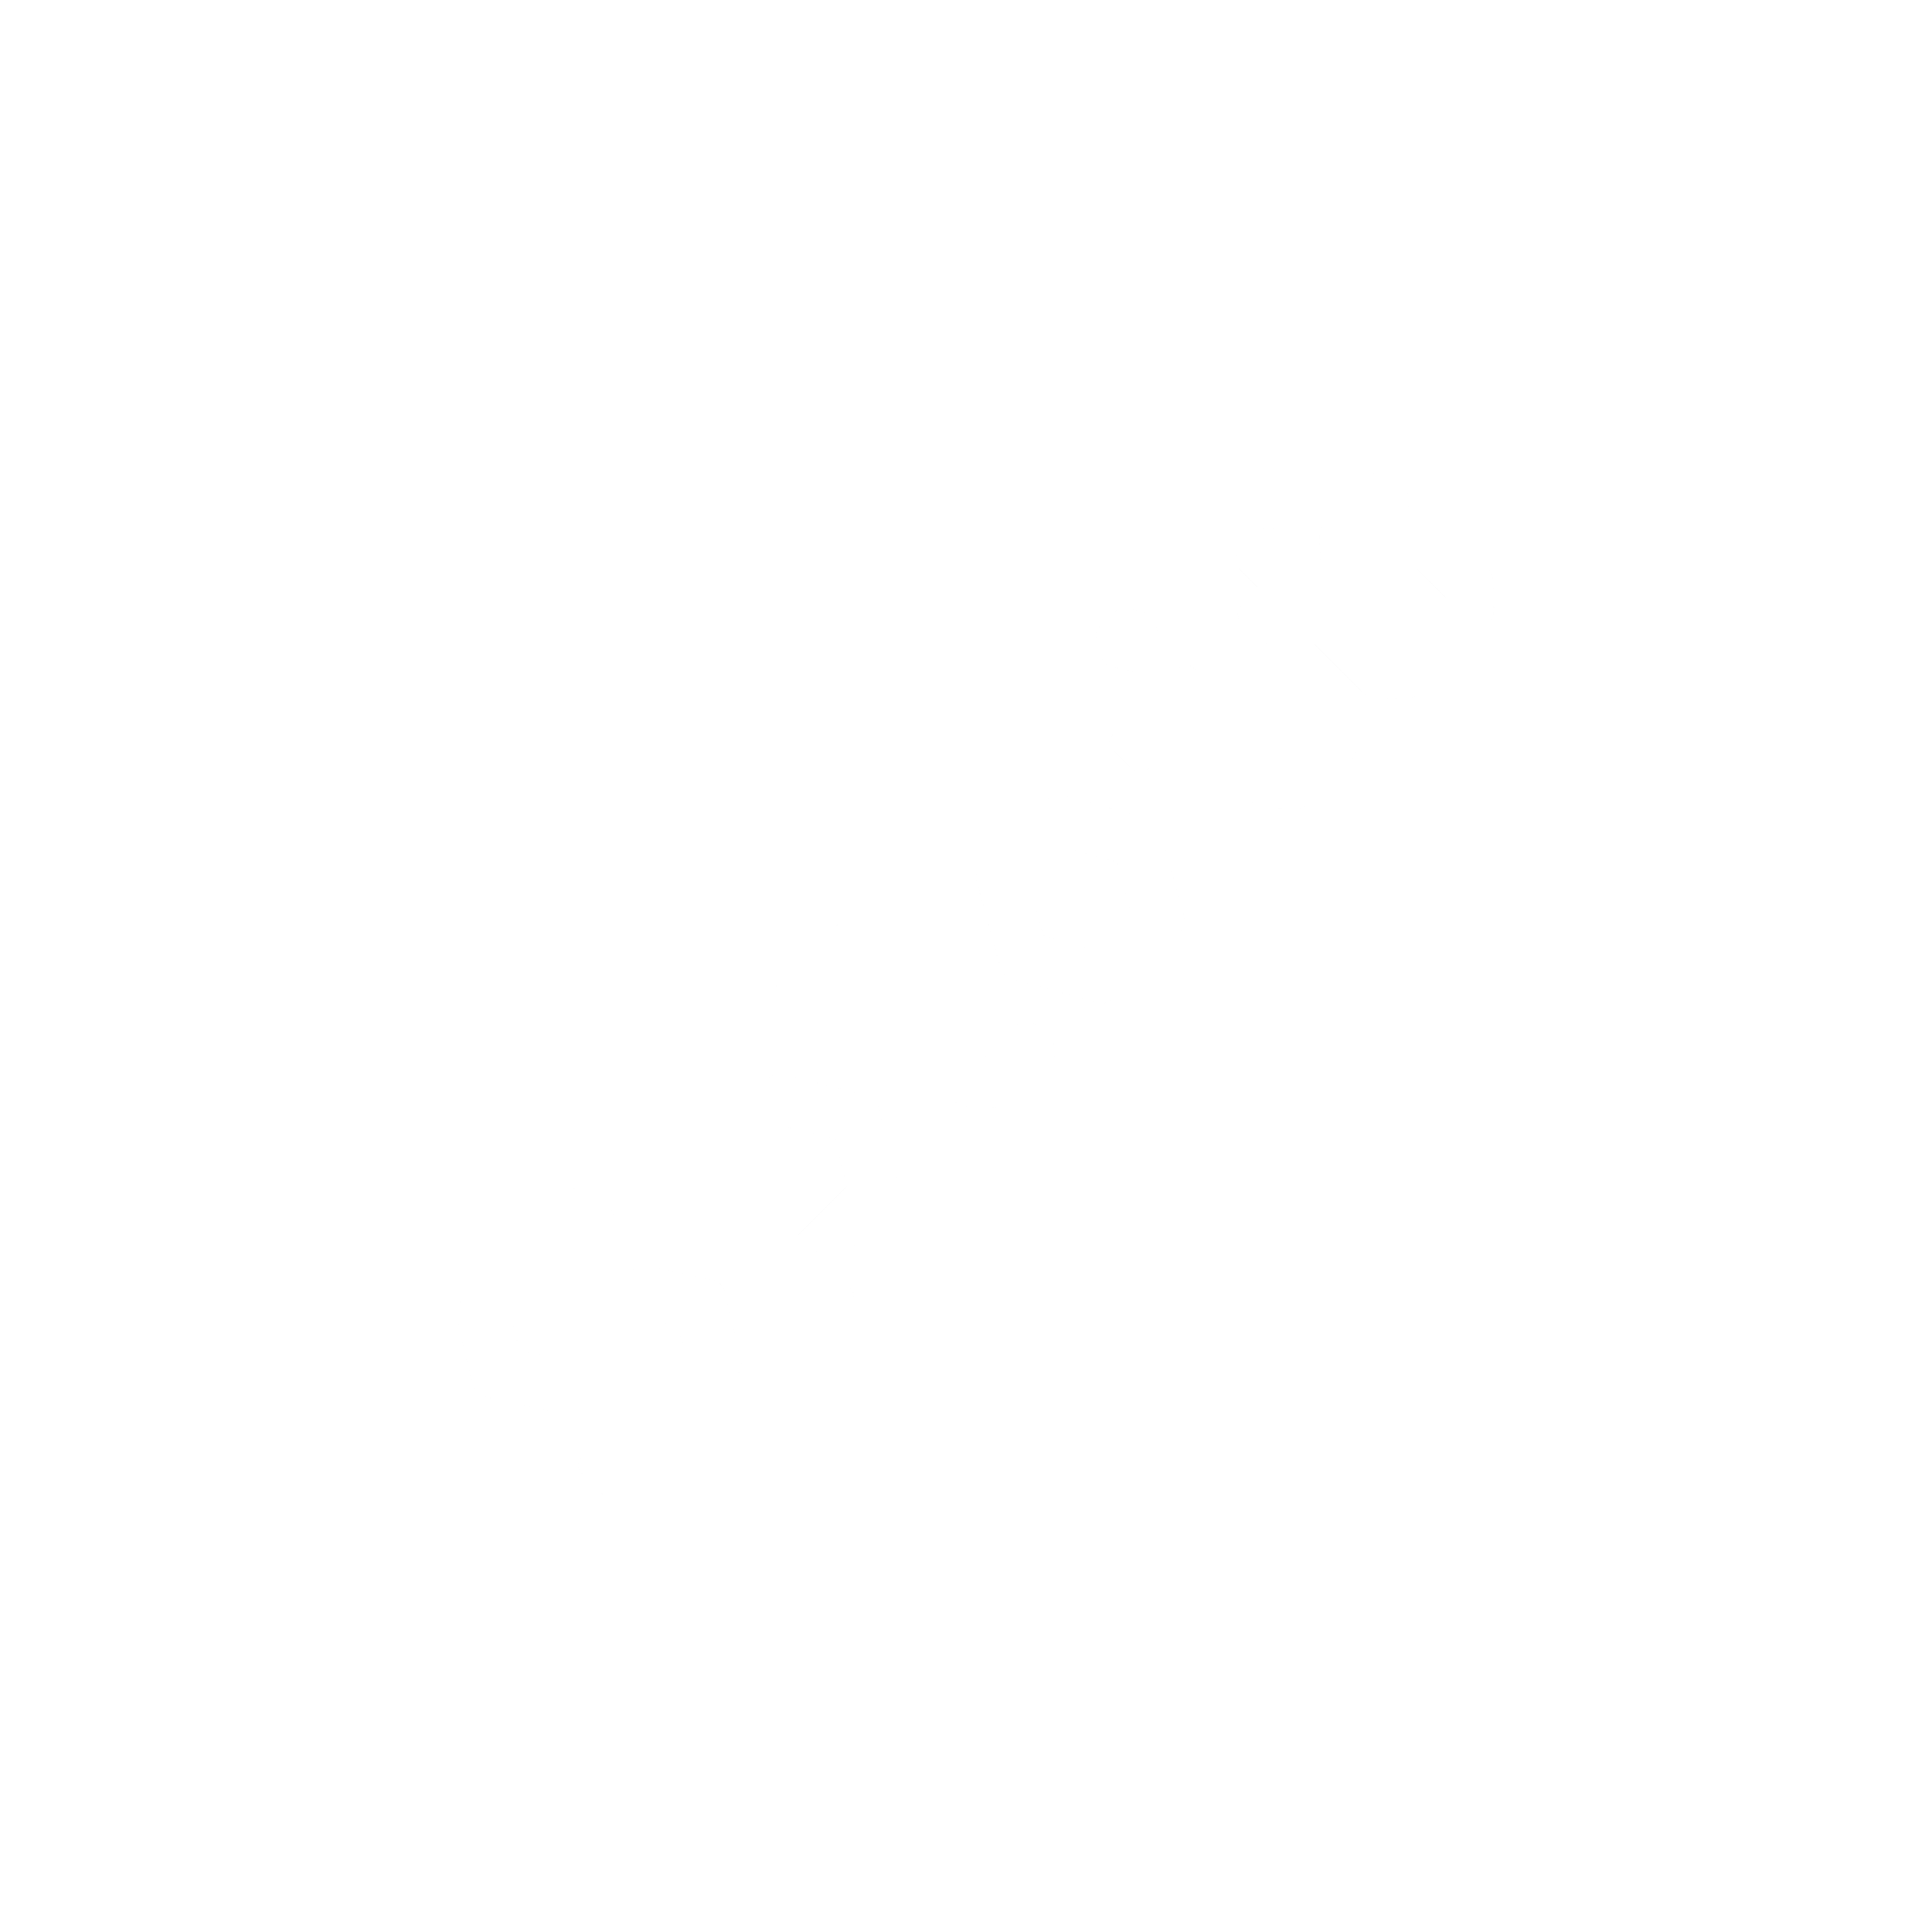 XSploit